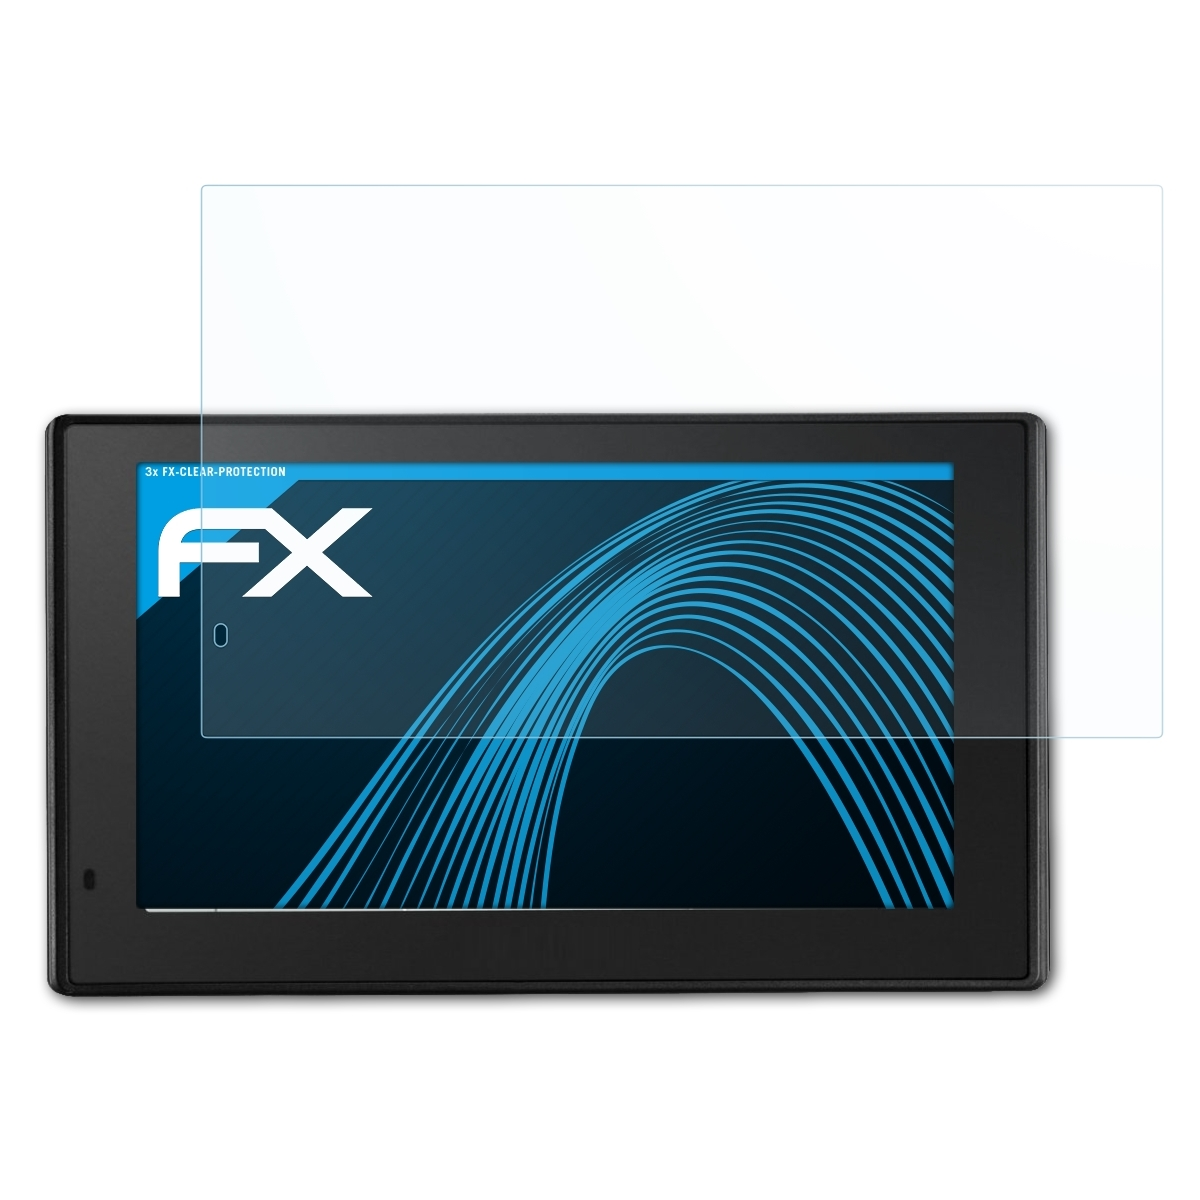 3x FX-Clear Displayschutz(für DriveAssist Garmin 50LMT-D) ATFOLIX